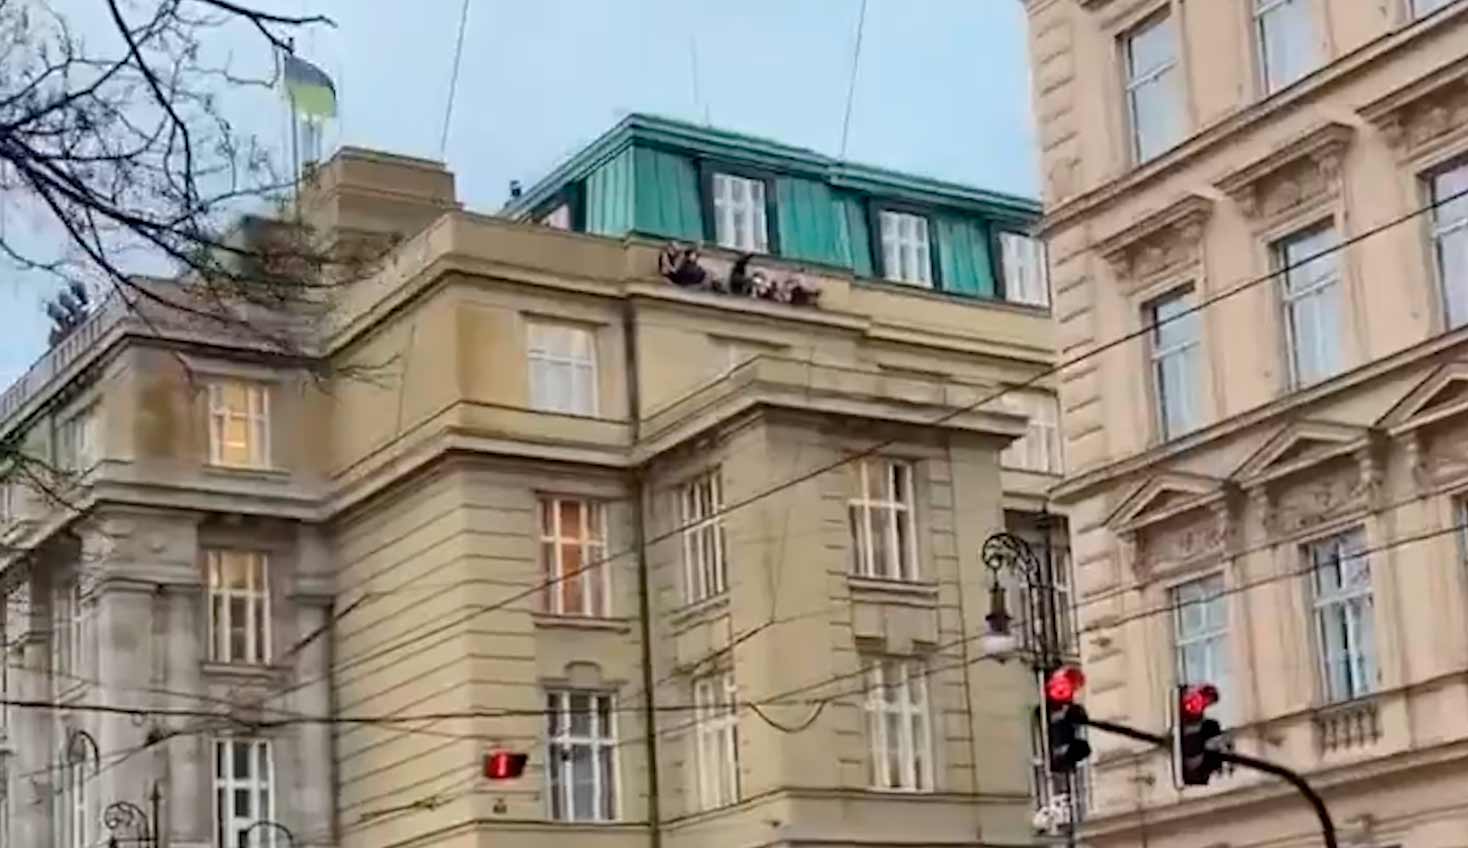 Tűzharc Prágában, 11 halálos áldozat egyetemi lövöldözés után. Fotók és videó: Twitter @BabakTaghvaee1 reprodukciója